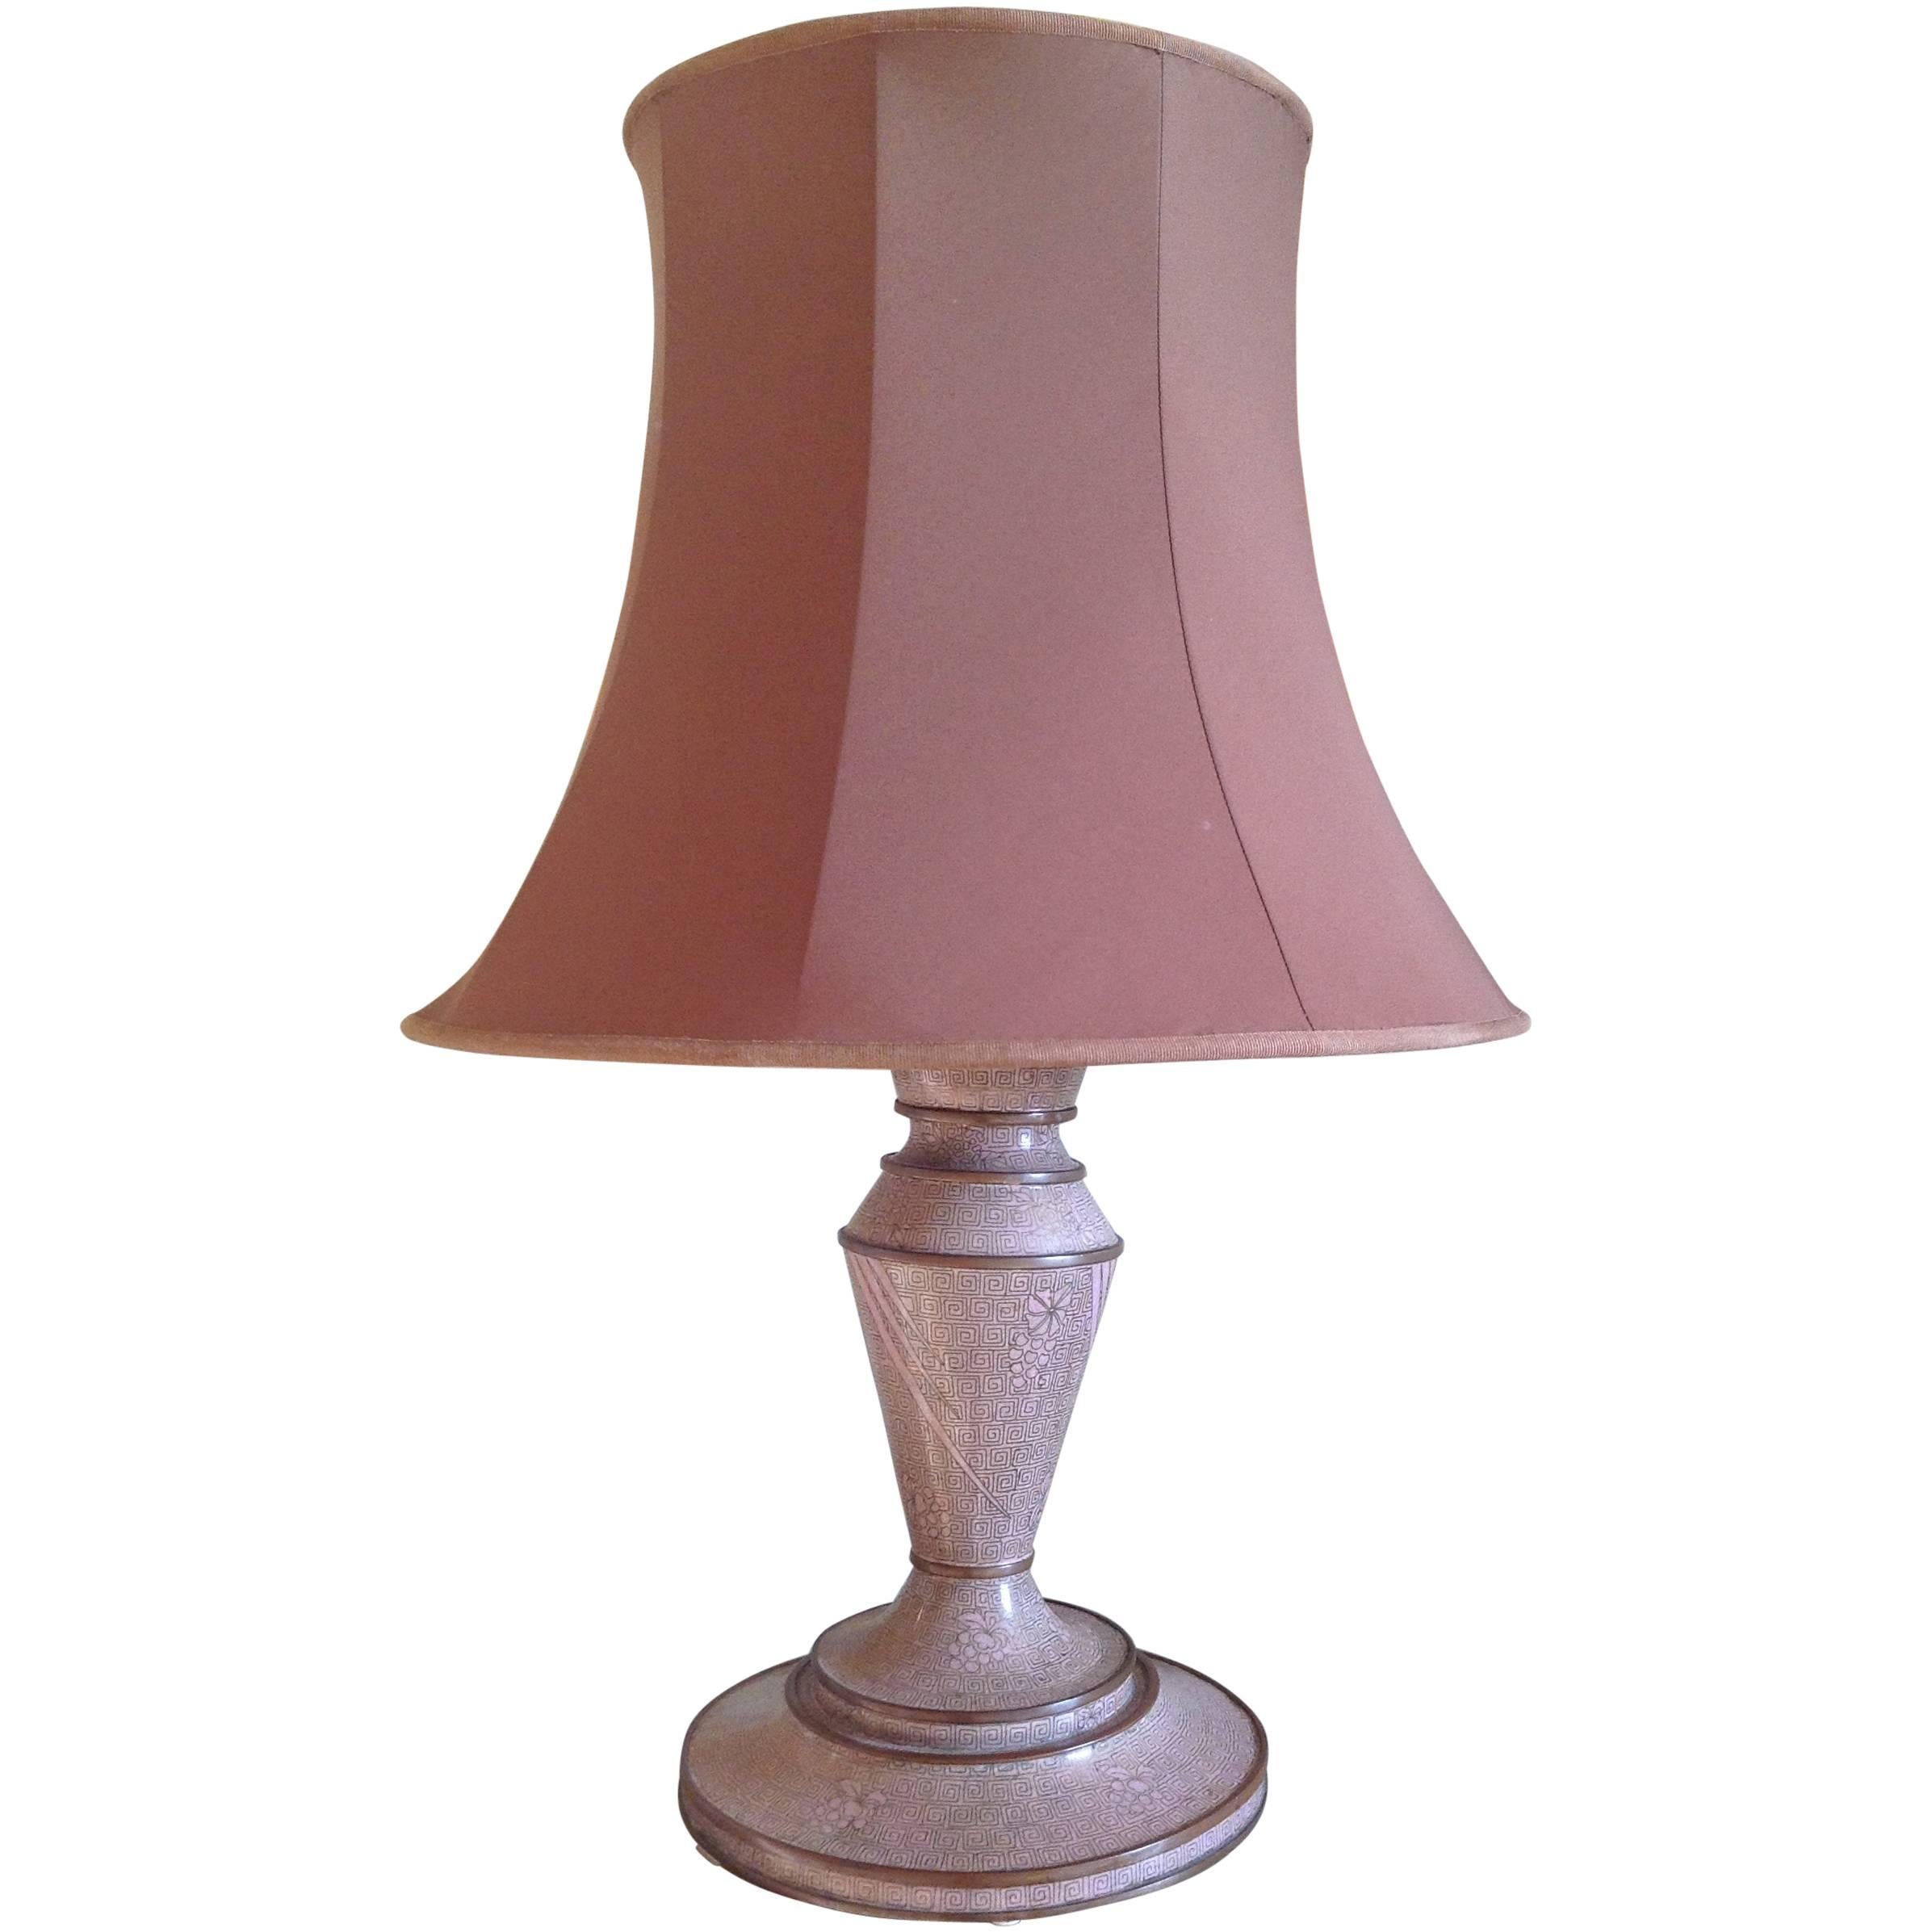 Wonderful cloisonne lamp For Sale